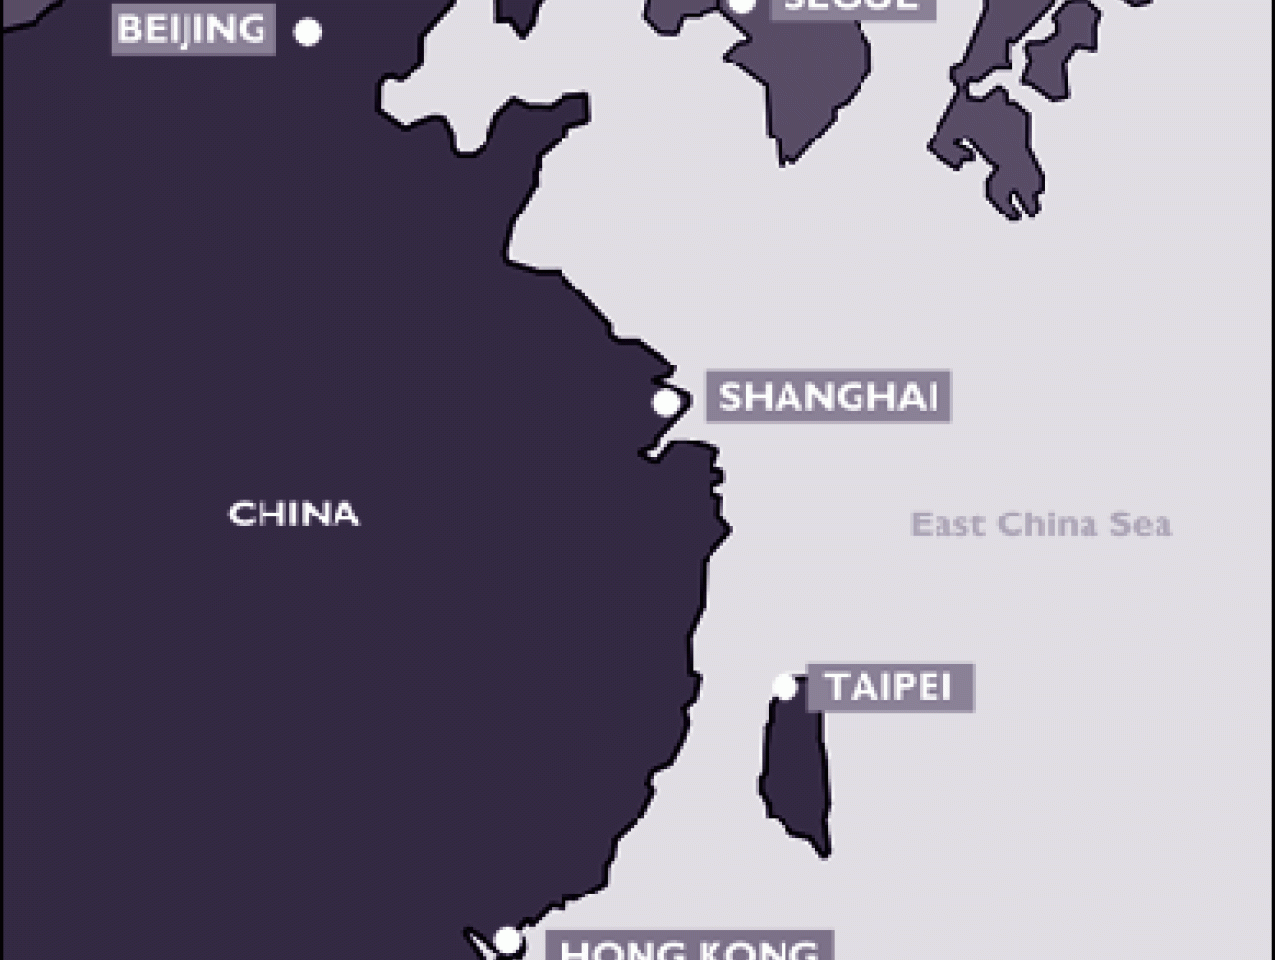 Map of China and Hong Kong